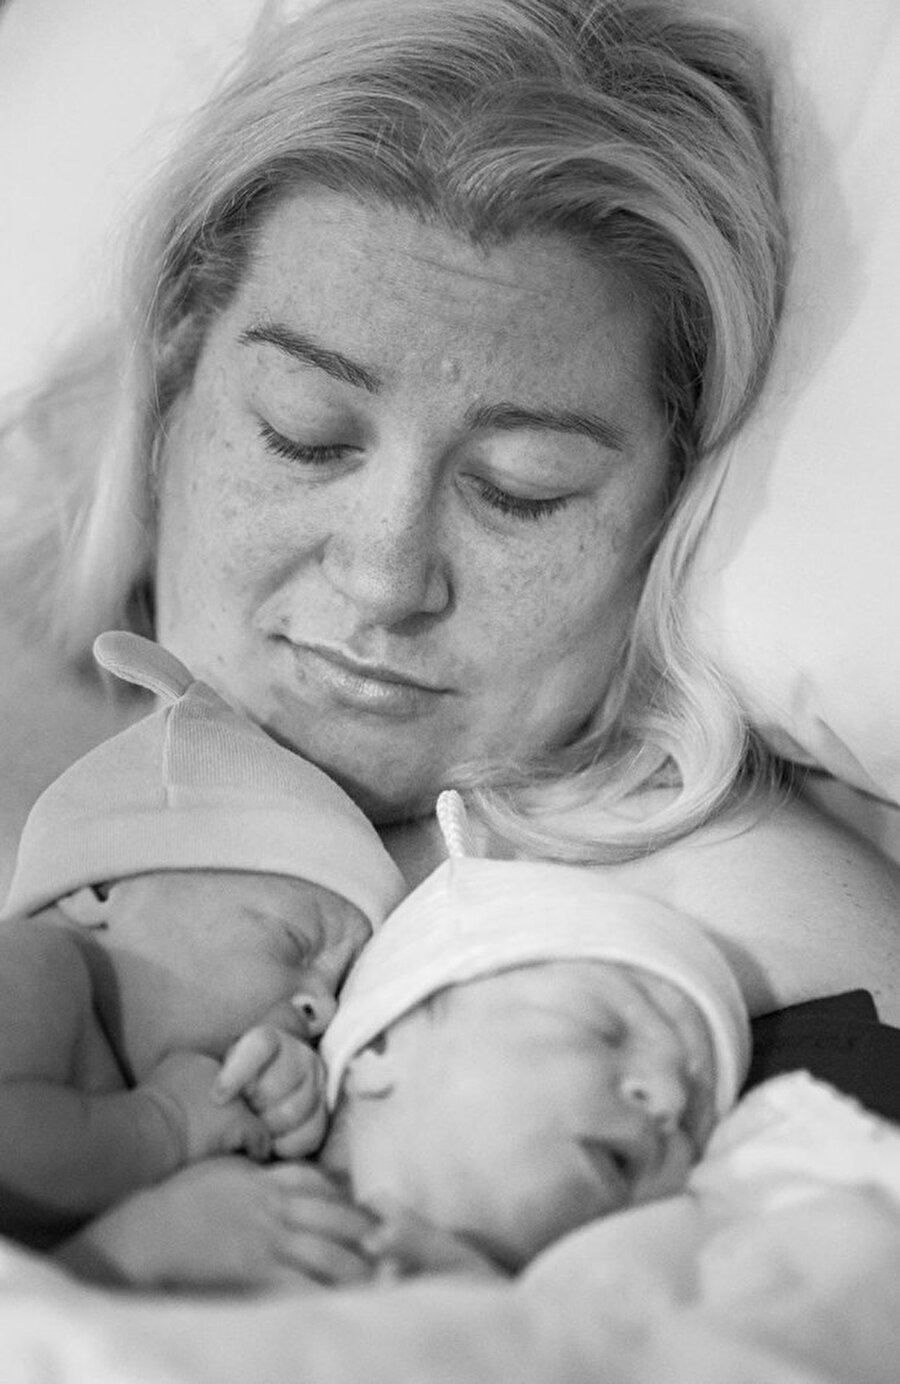 Bebekler aynı anda dünyaya geldi
Charlotte ve Olivia isimleri verilen bebekler birlikte dünyaya geldi.